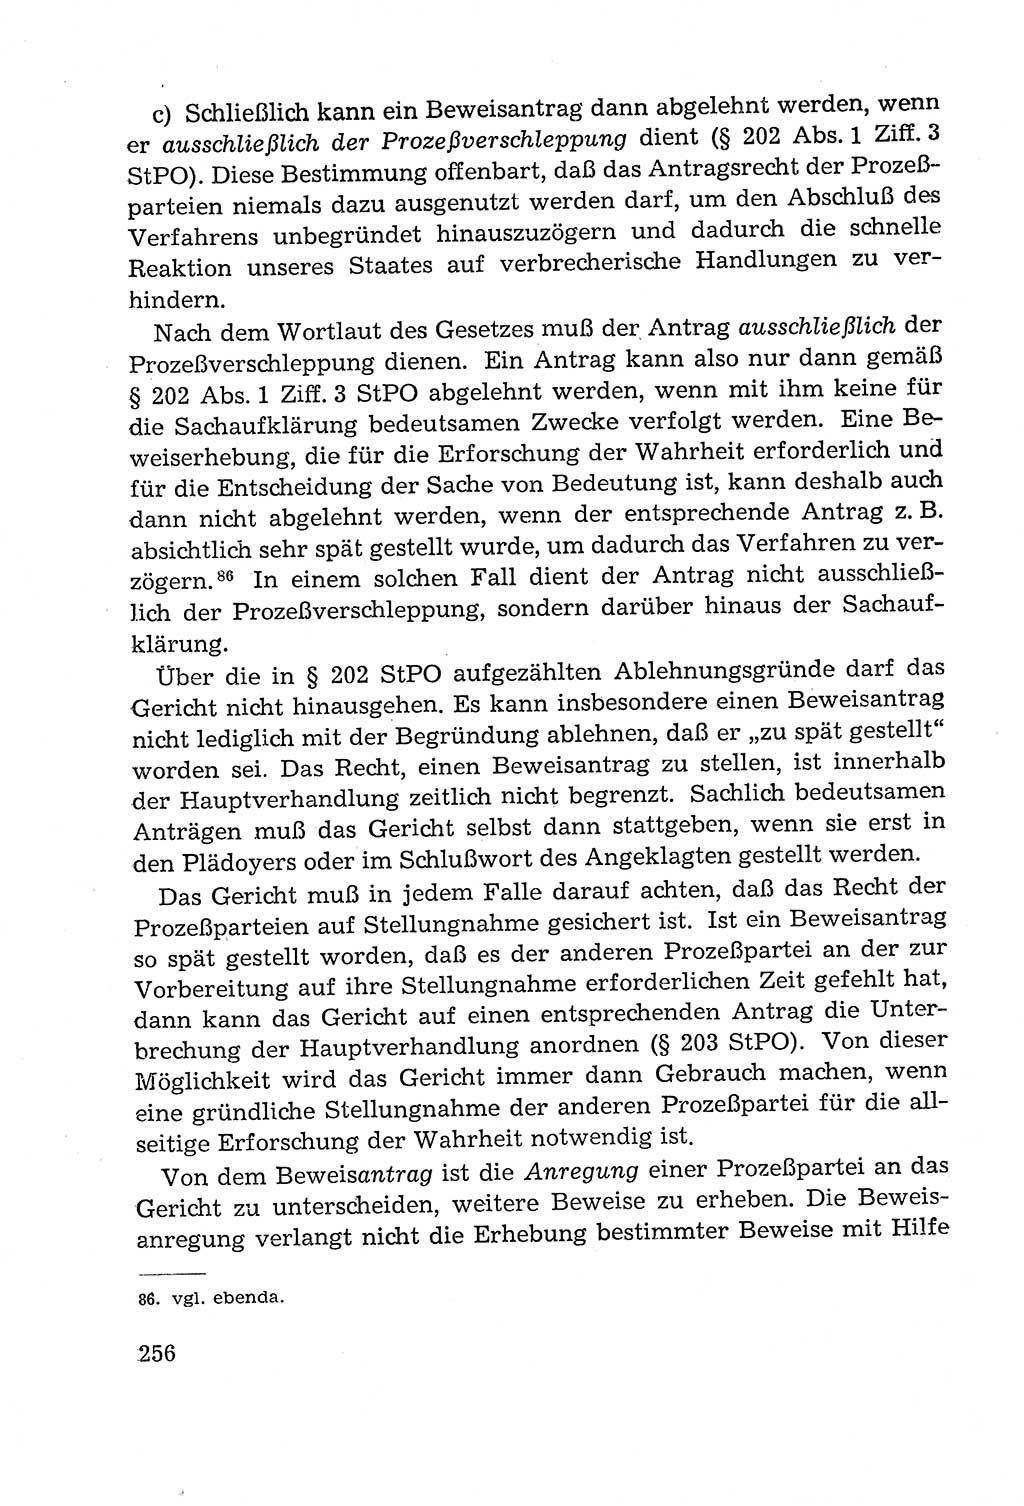 Leitfaden des Strafprozeßrechts der Deutschen Demokratischen Republik (DDR) 1959, Seite 256 (LF StPR DDR 1959, S. 256)